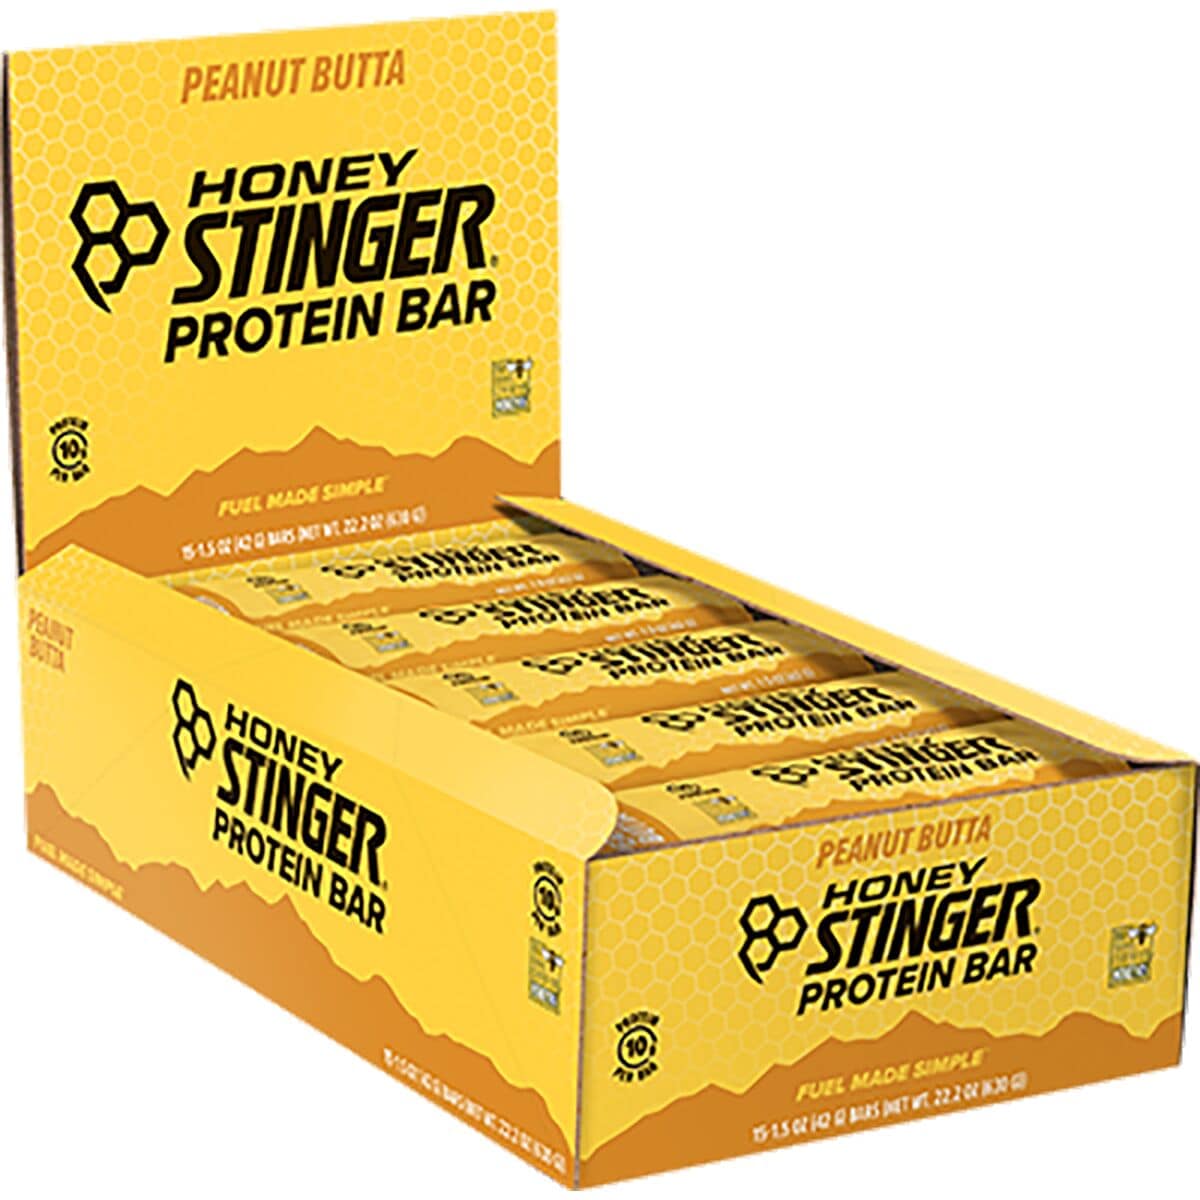 Honey Stinger Protein Bar - 10g - 15 Pack Peanut Butta, 10 Gram